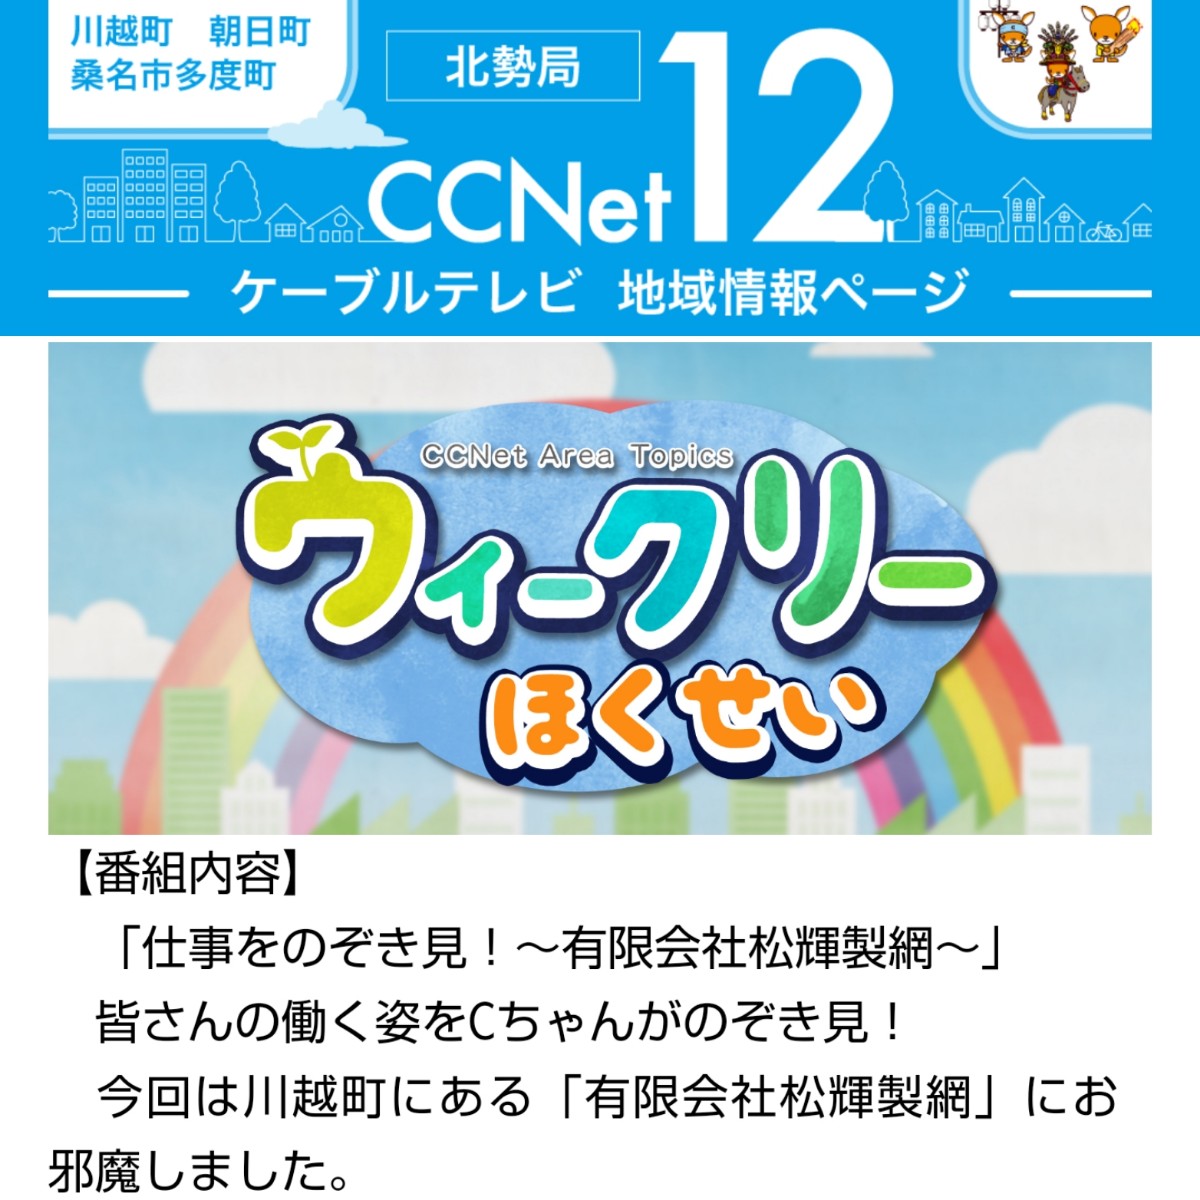 ケーブルテレビ北勢局　CCNet12